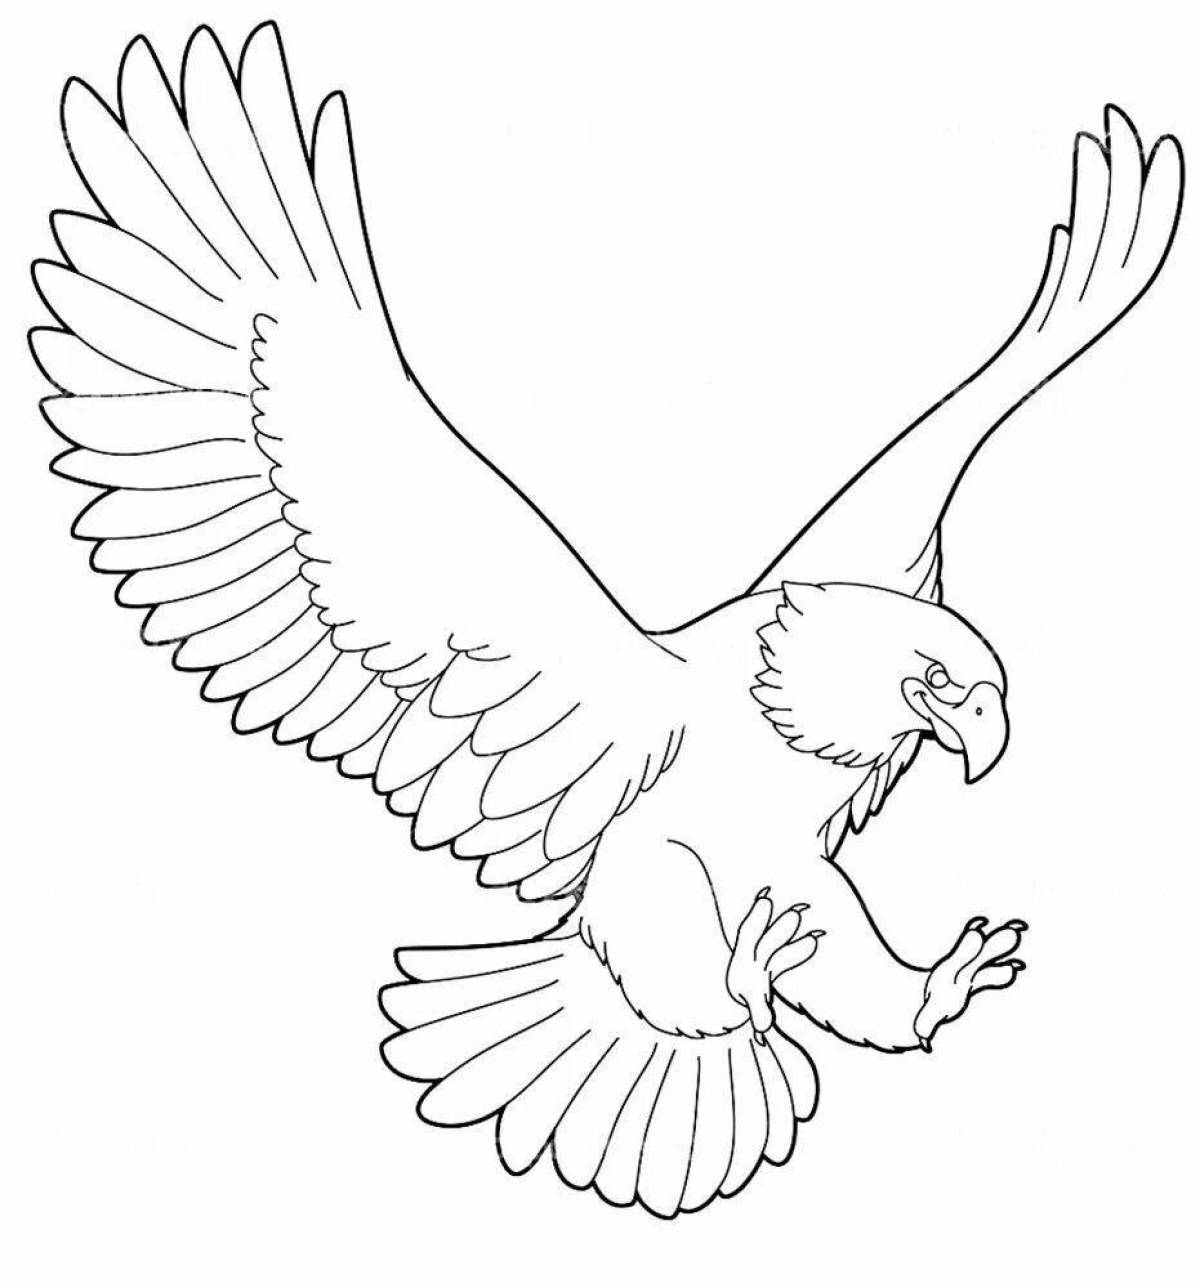 Изысканная раскраска степного орла